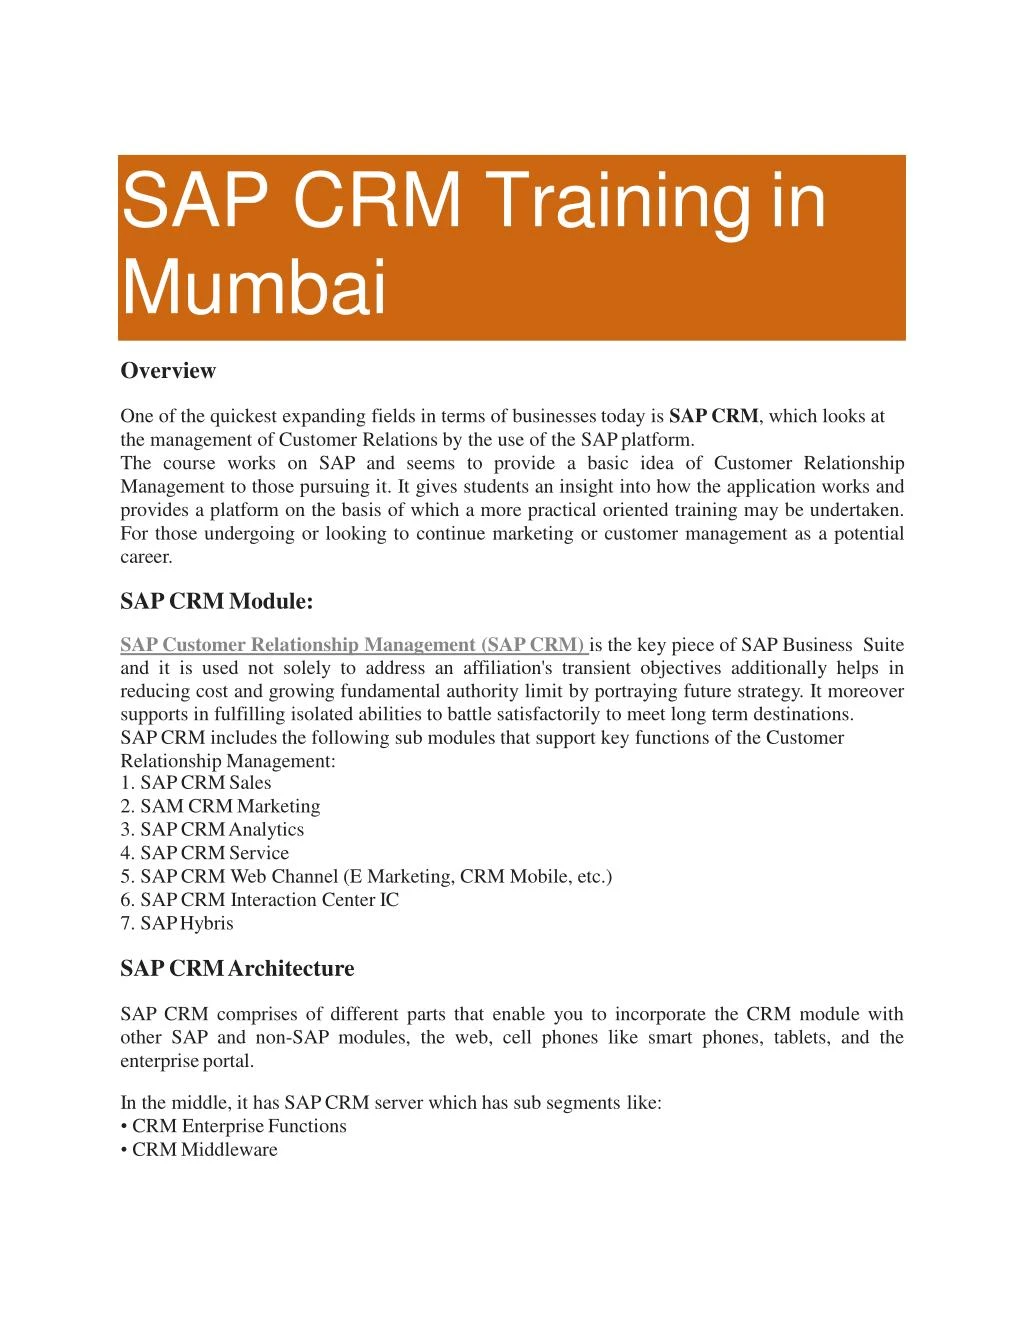 sap crm training in mumbai